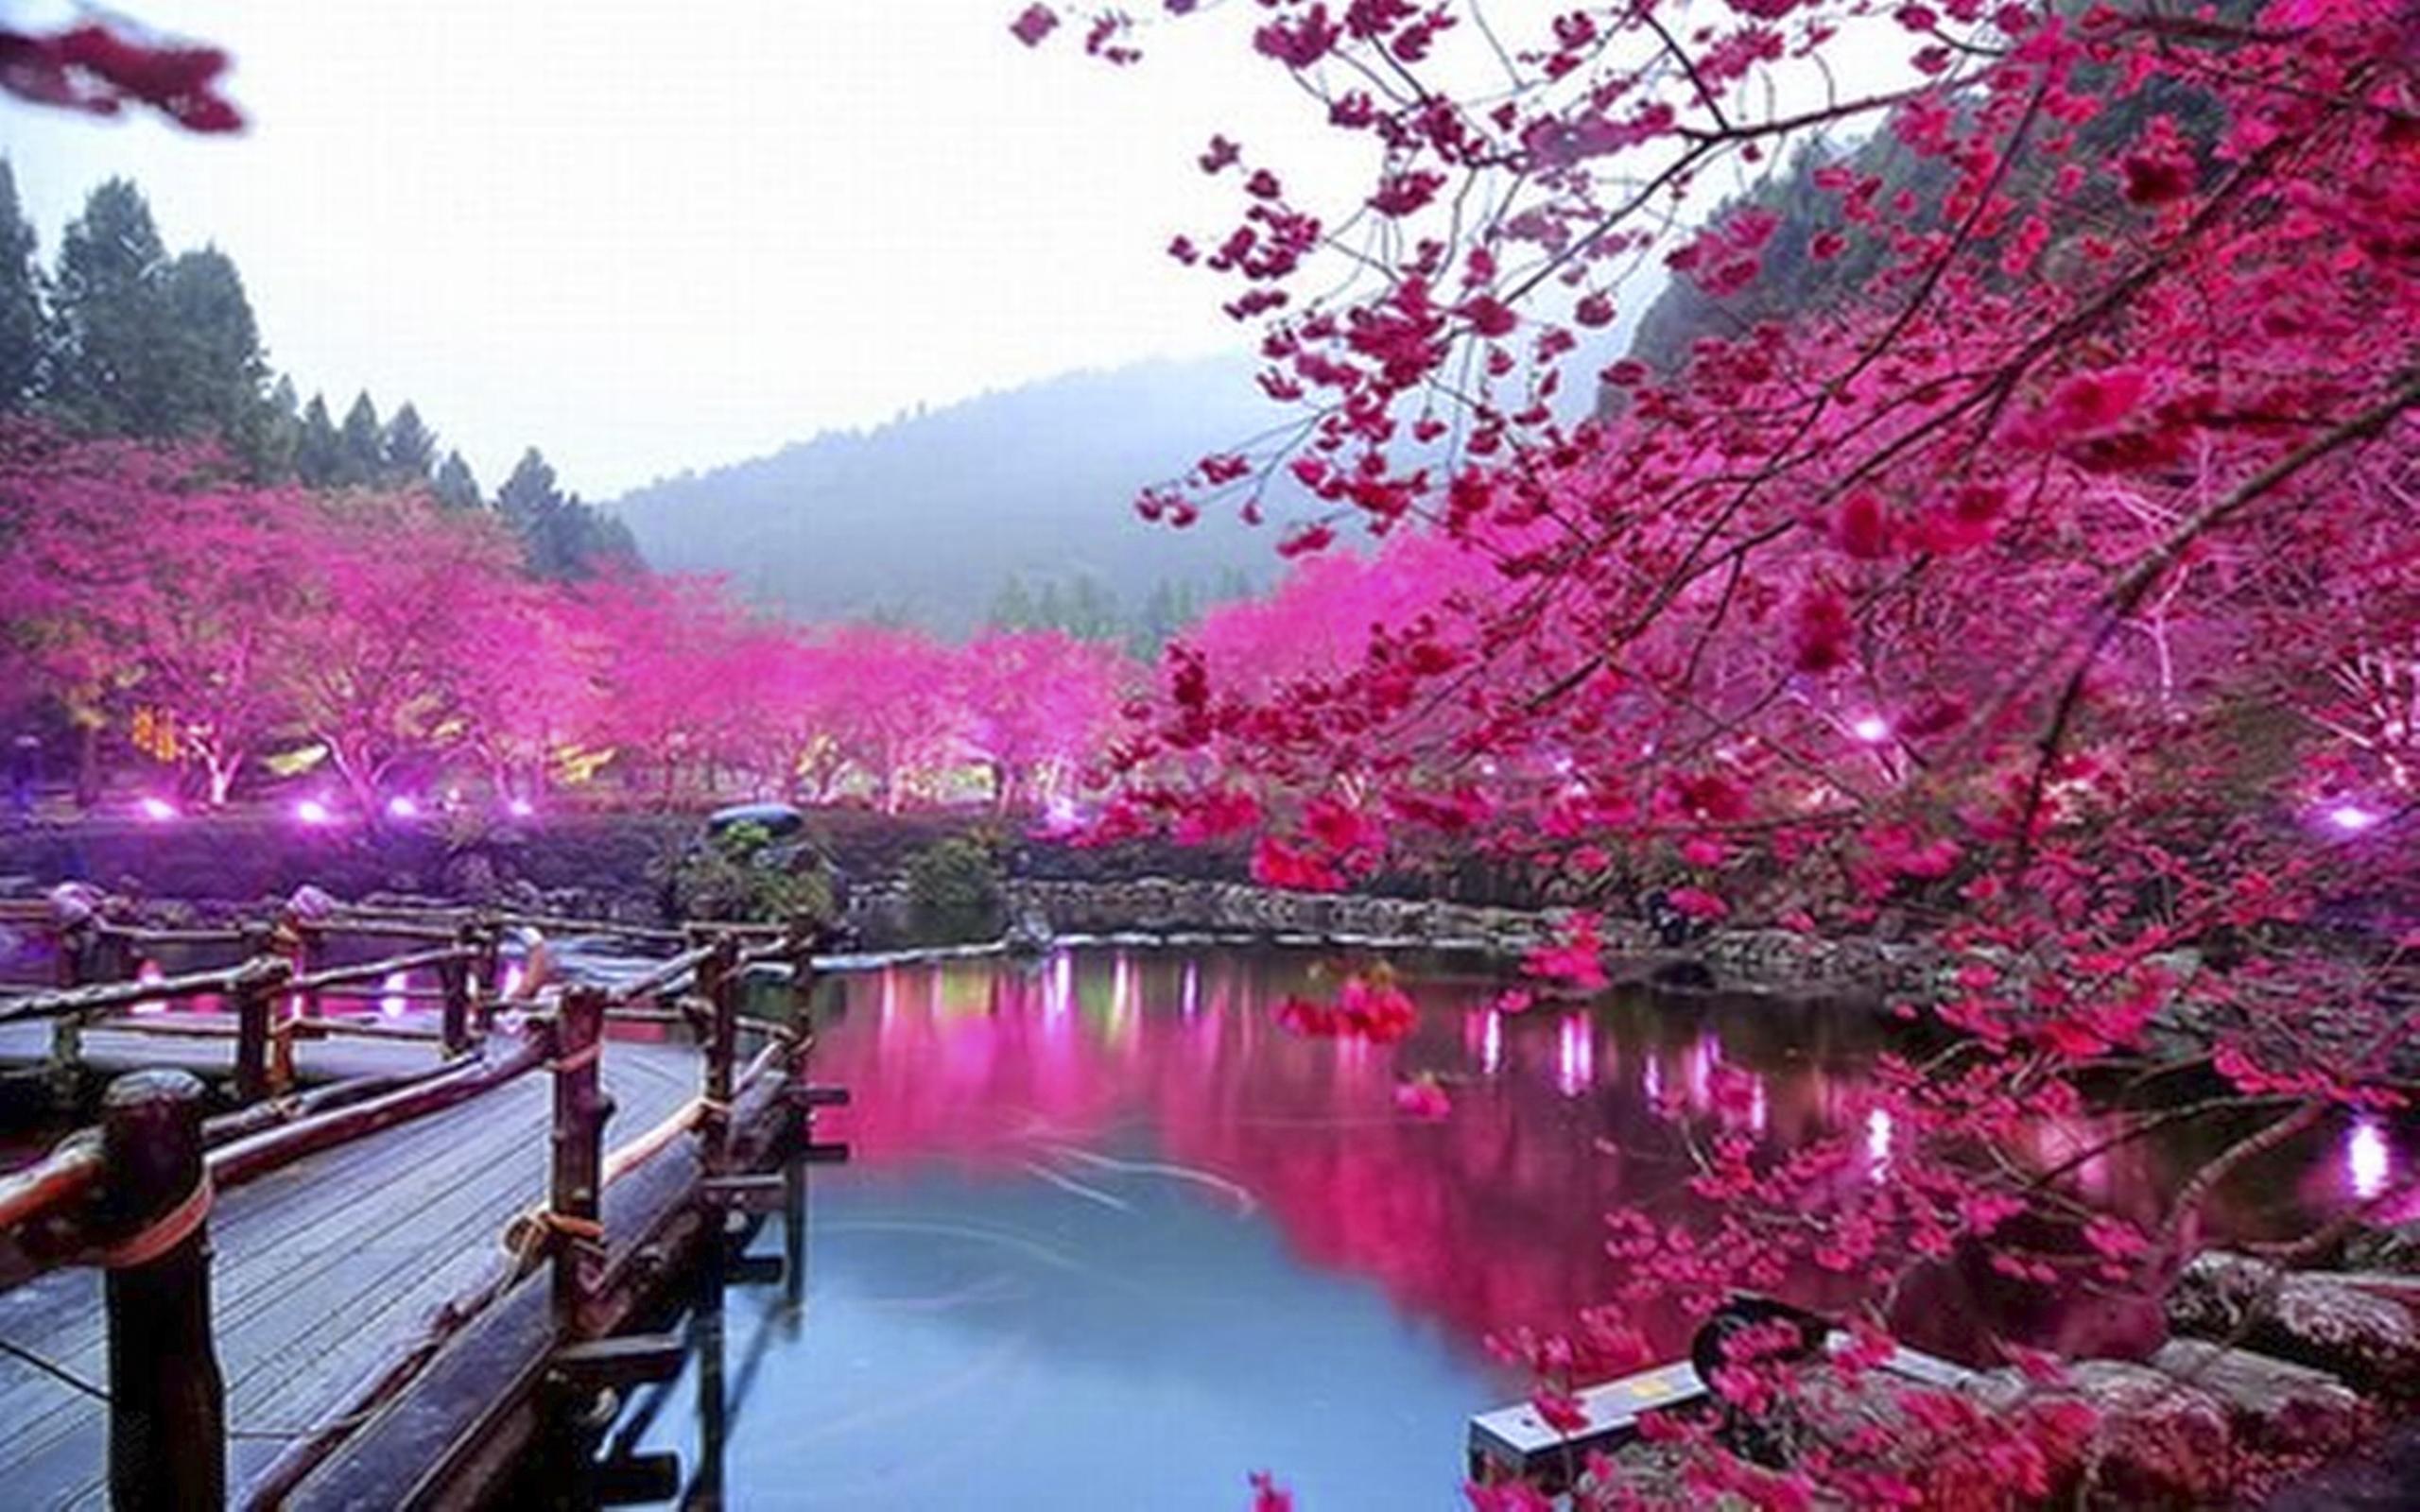 Pink Color, Lake, Trees, Bridge, HD Wallpaper 000213, Wallpaper13.com